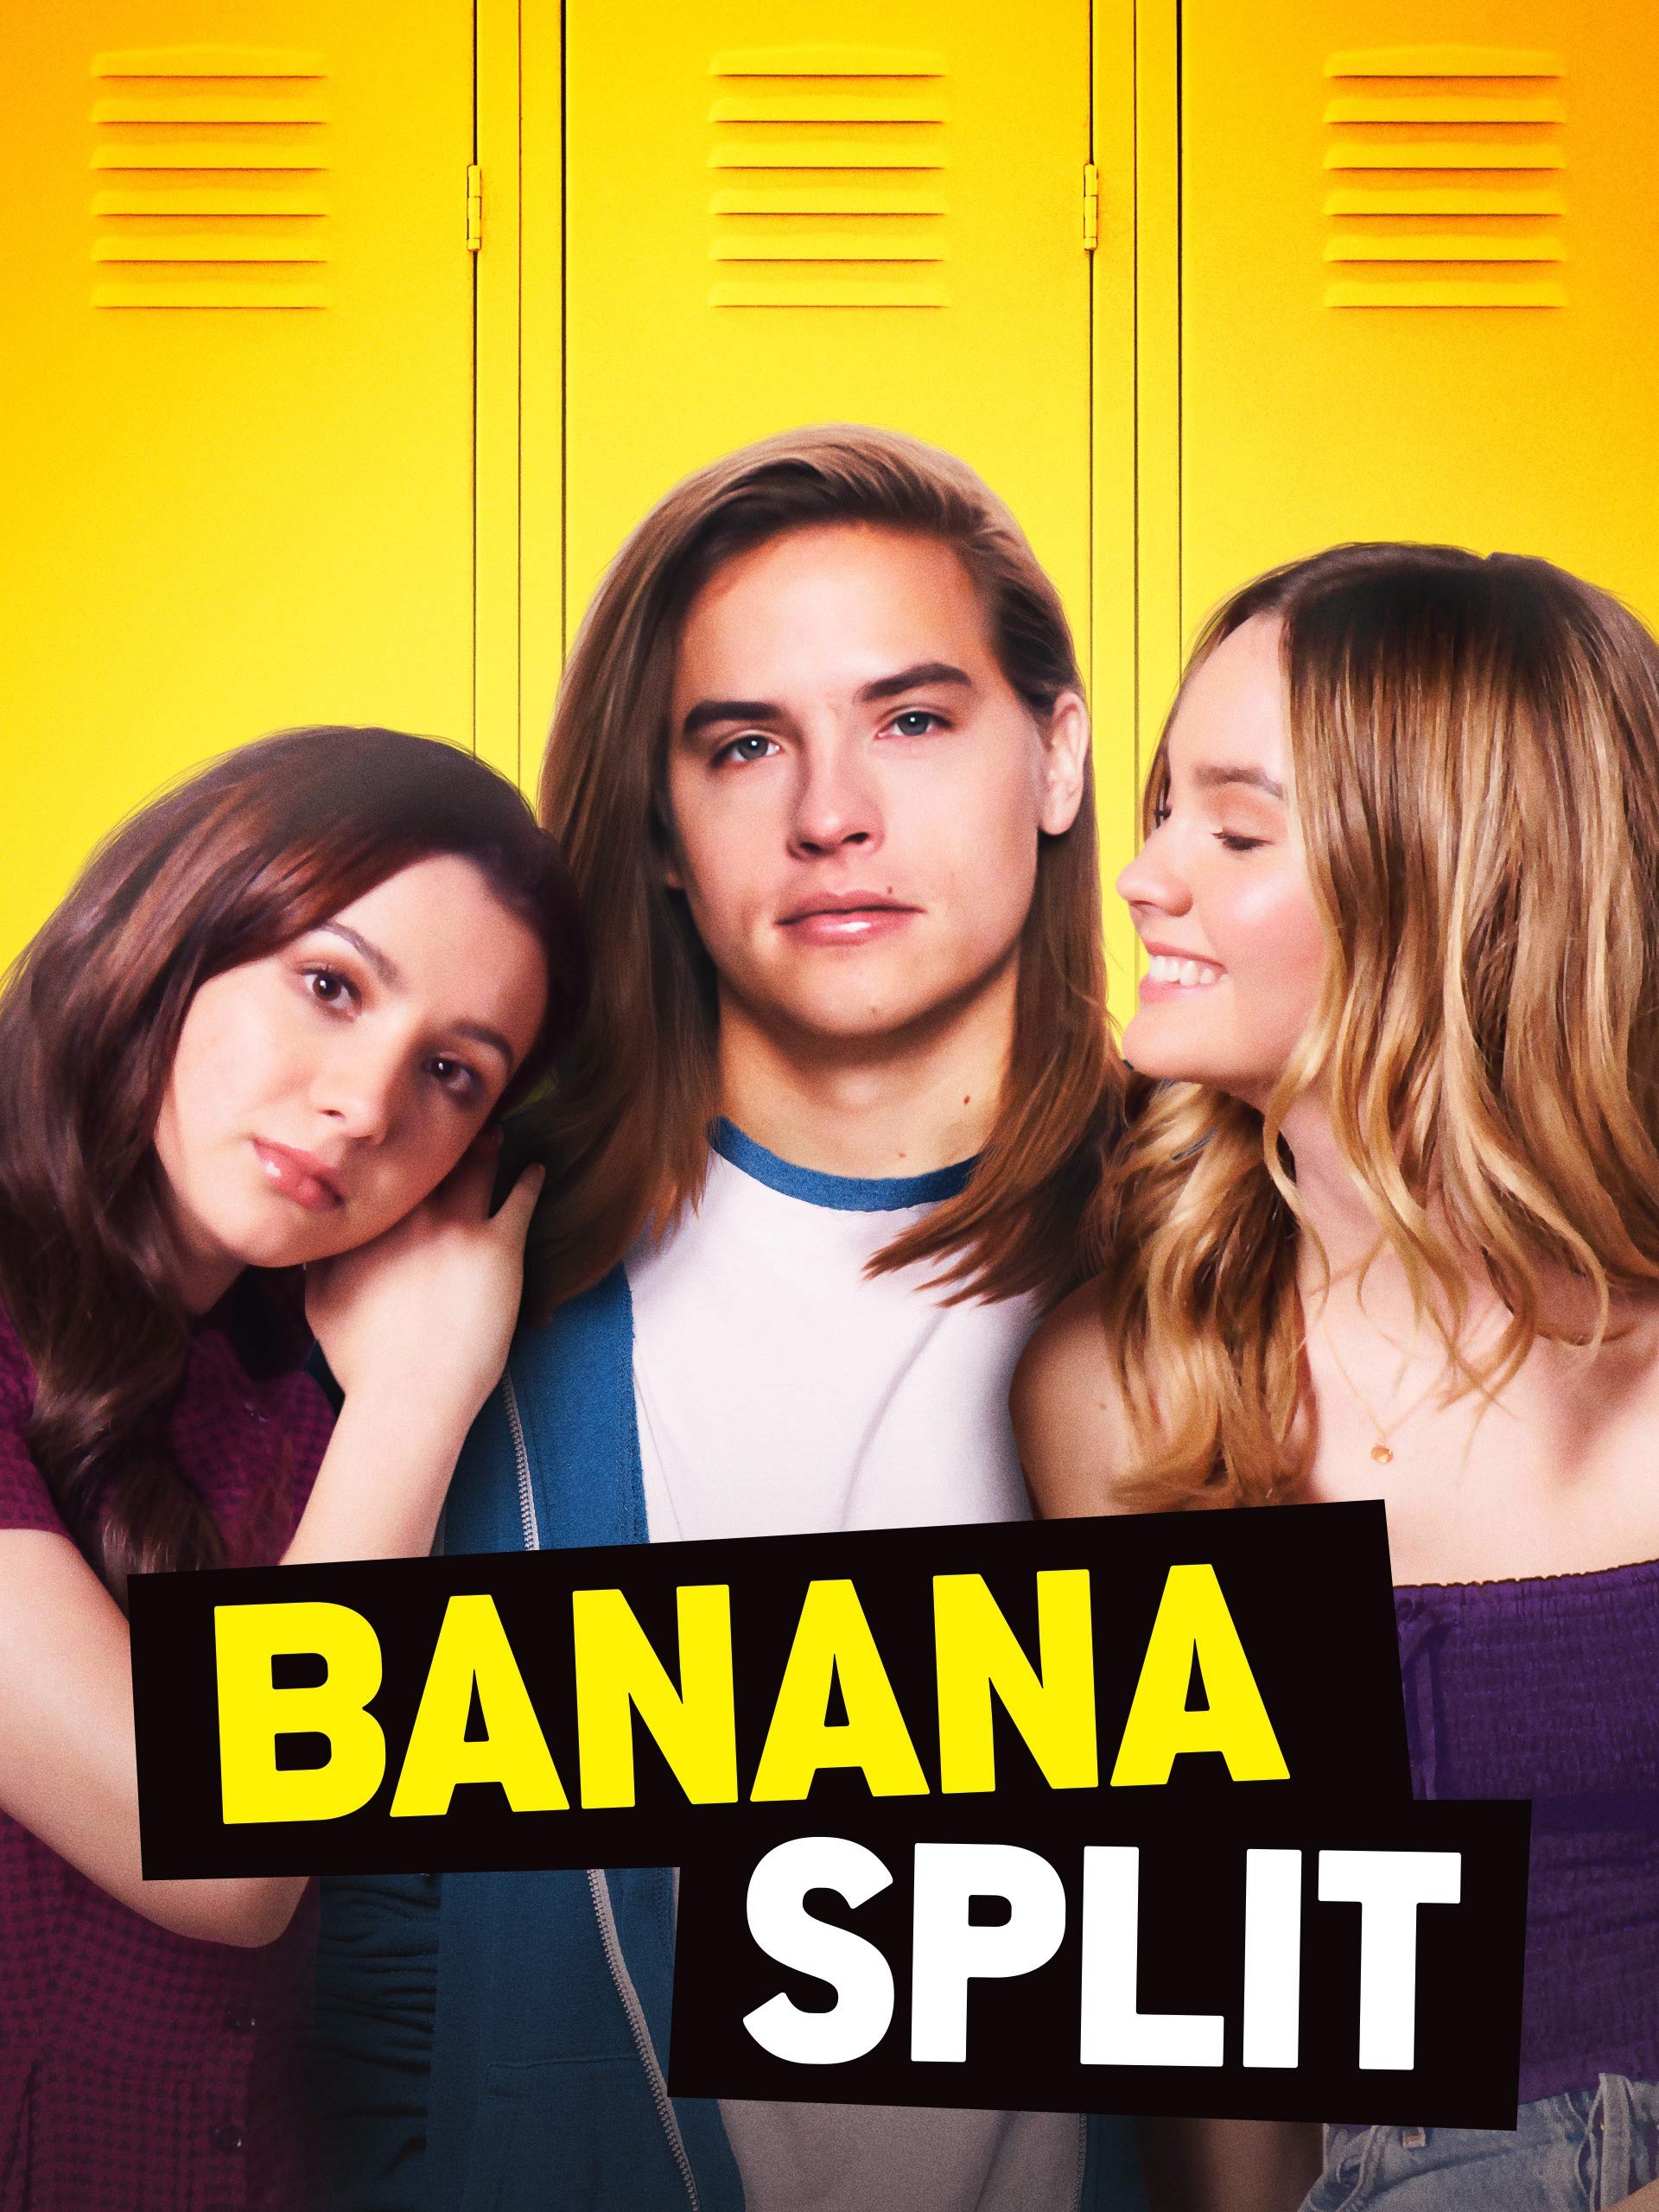 Dylan Sprouse in Banana Split